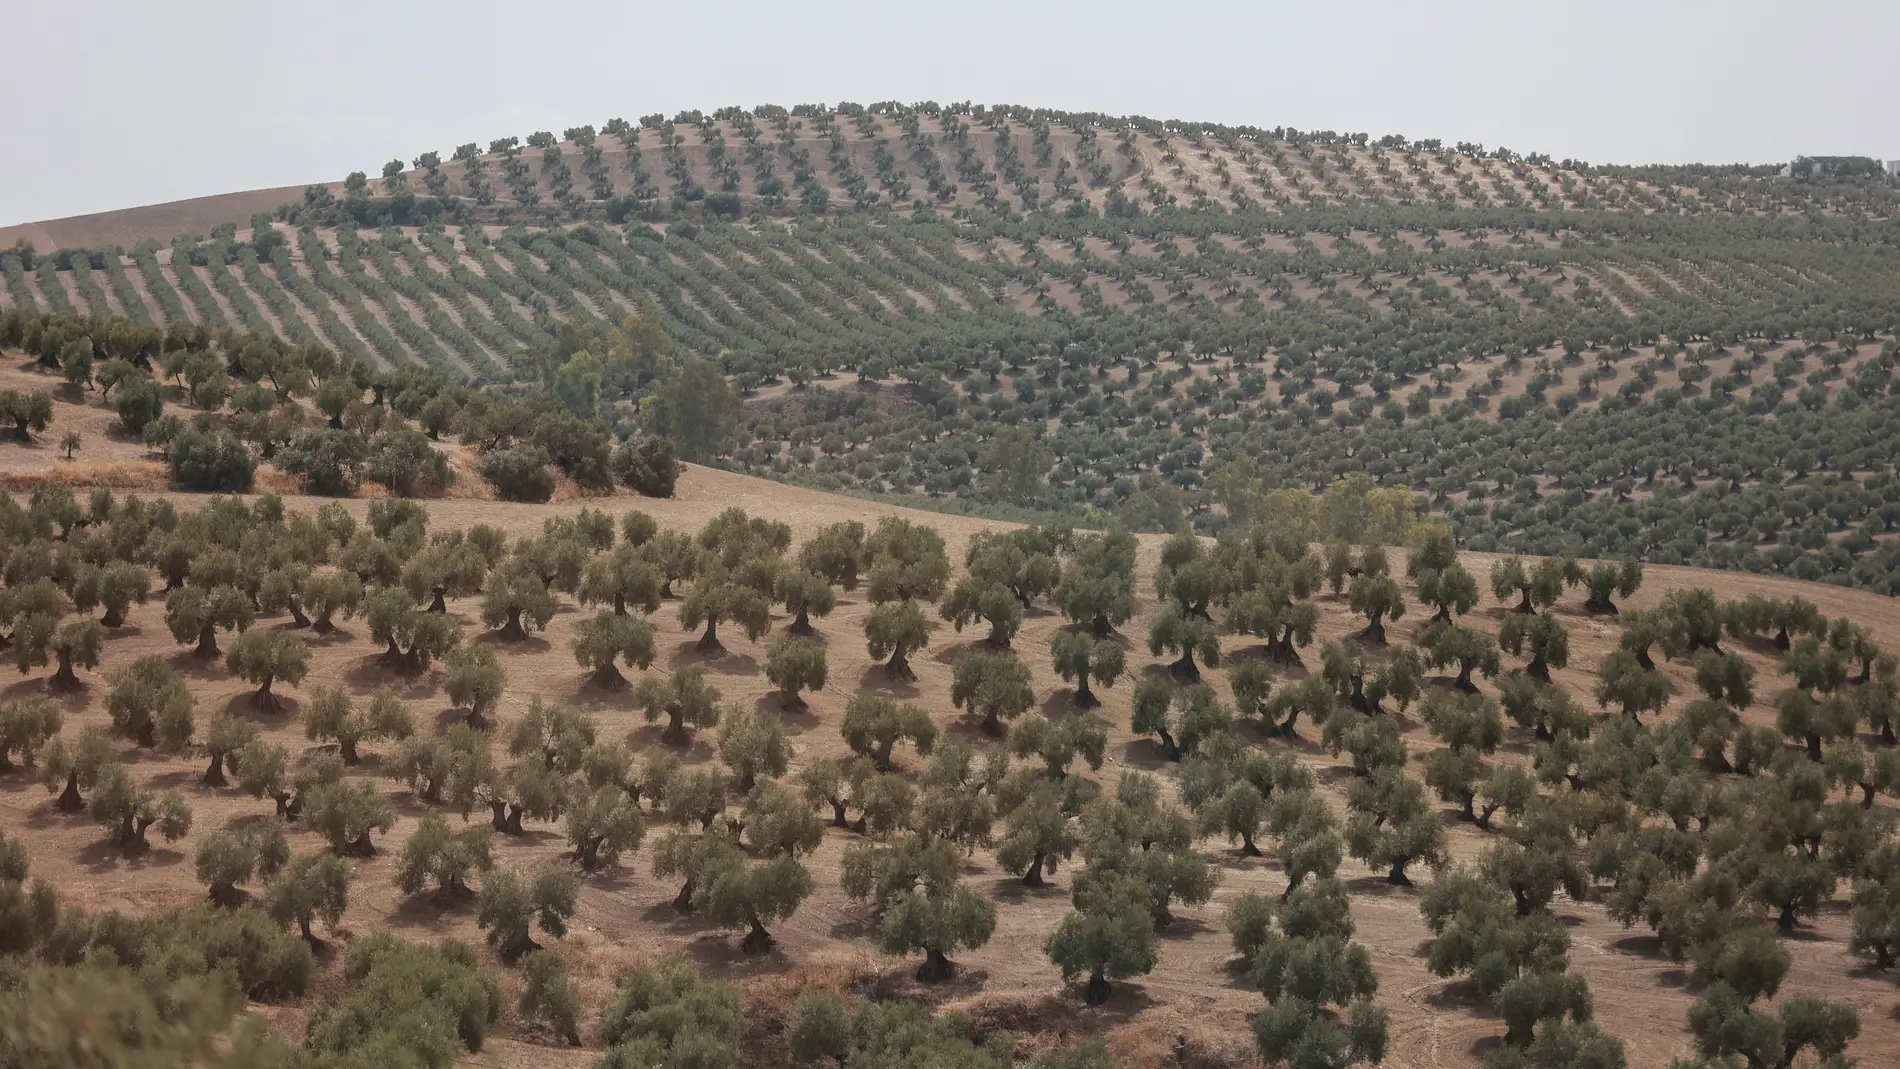 Un olivar en Jaén 